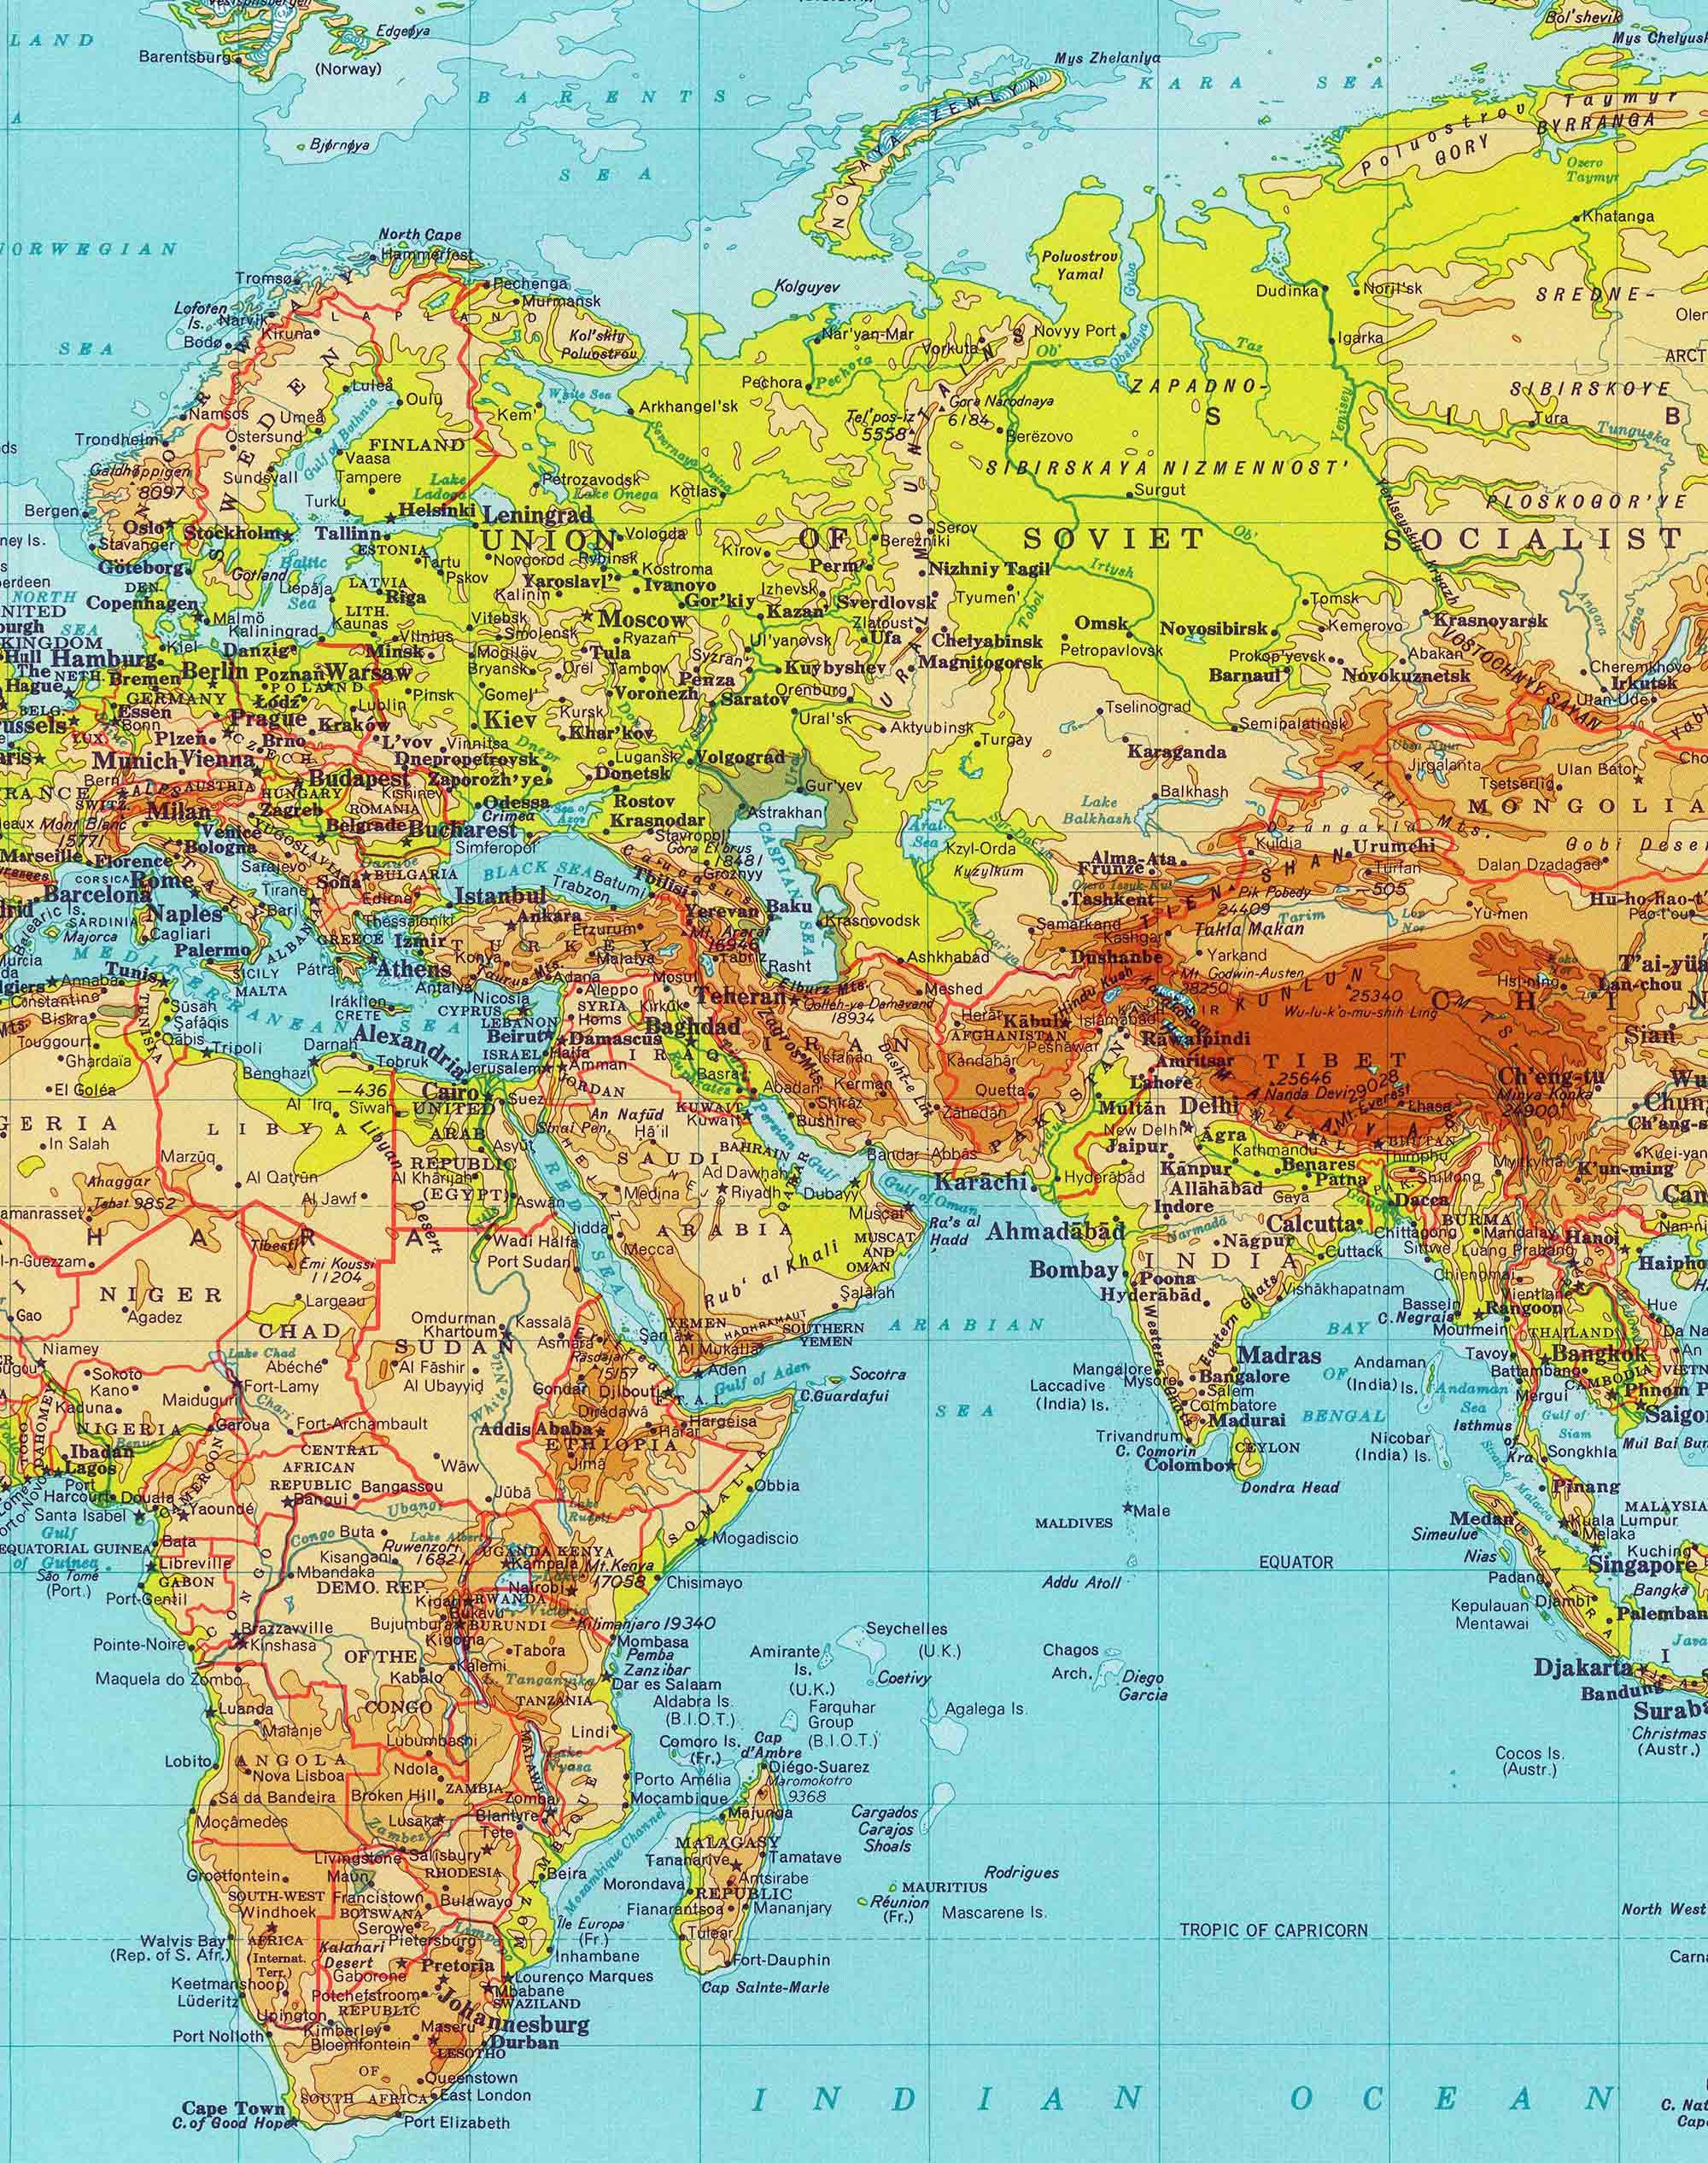 Mapa del Mundo 1970 - Enmarcado